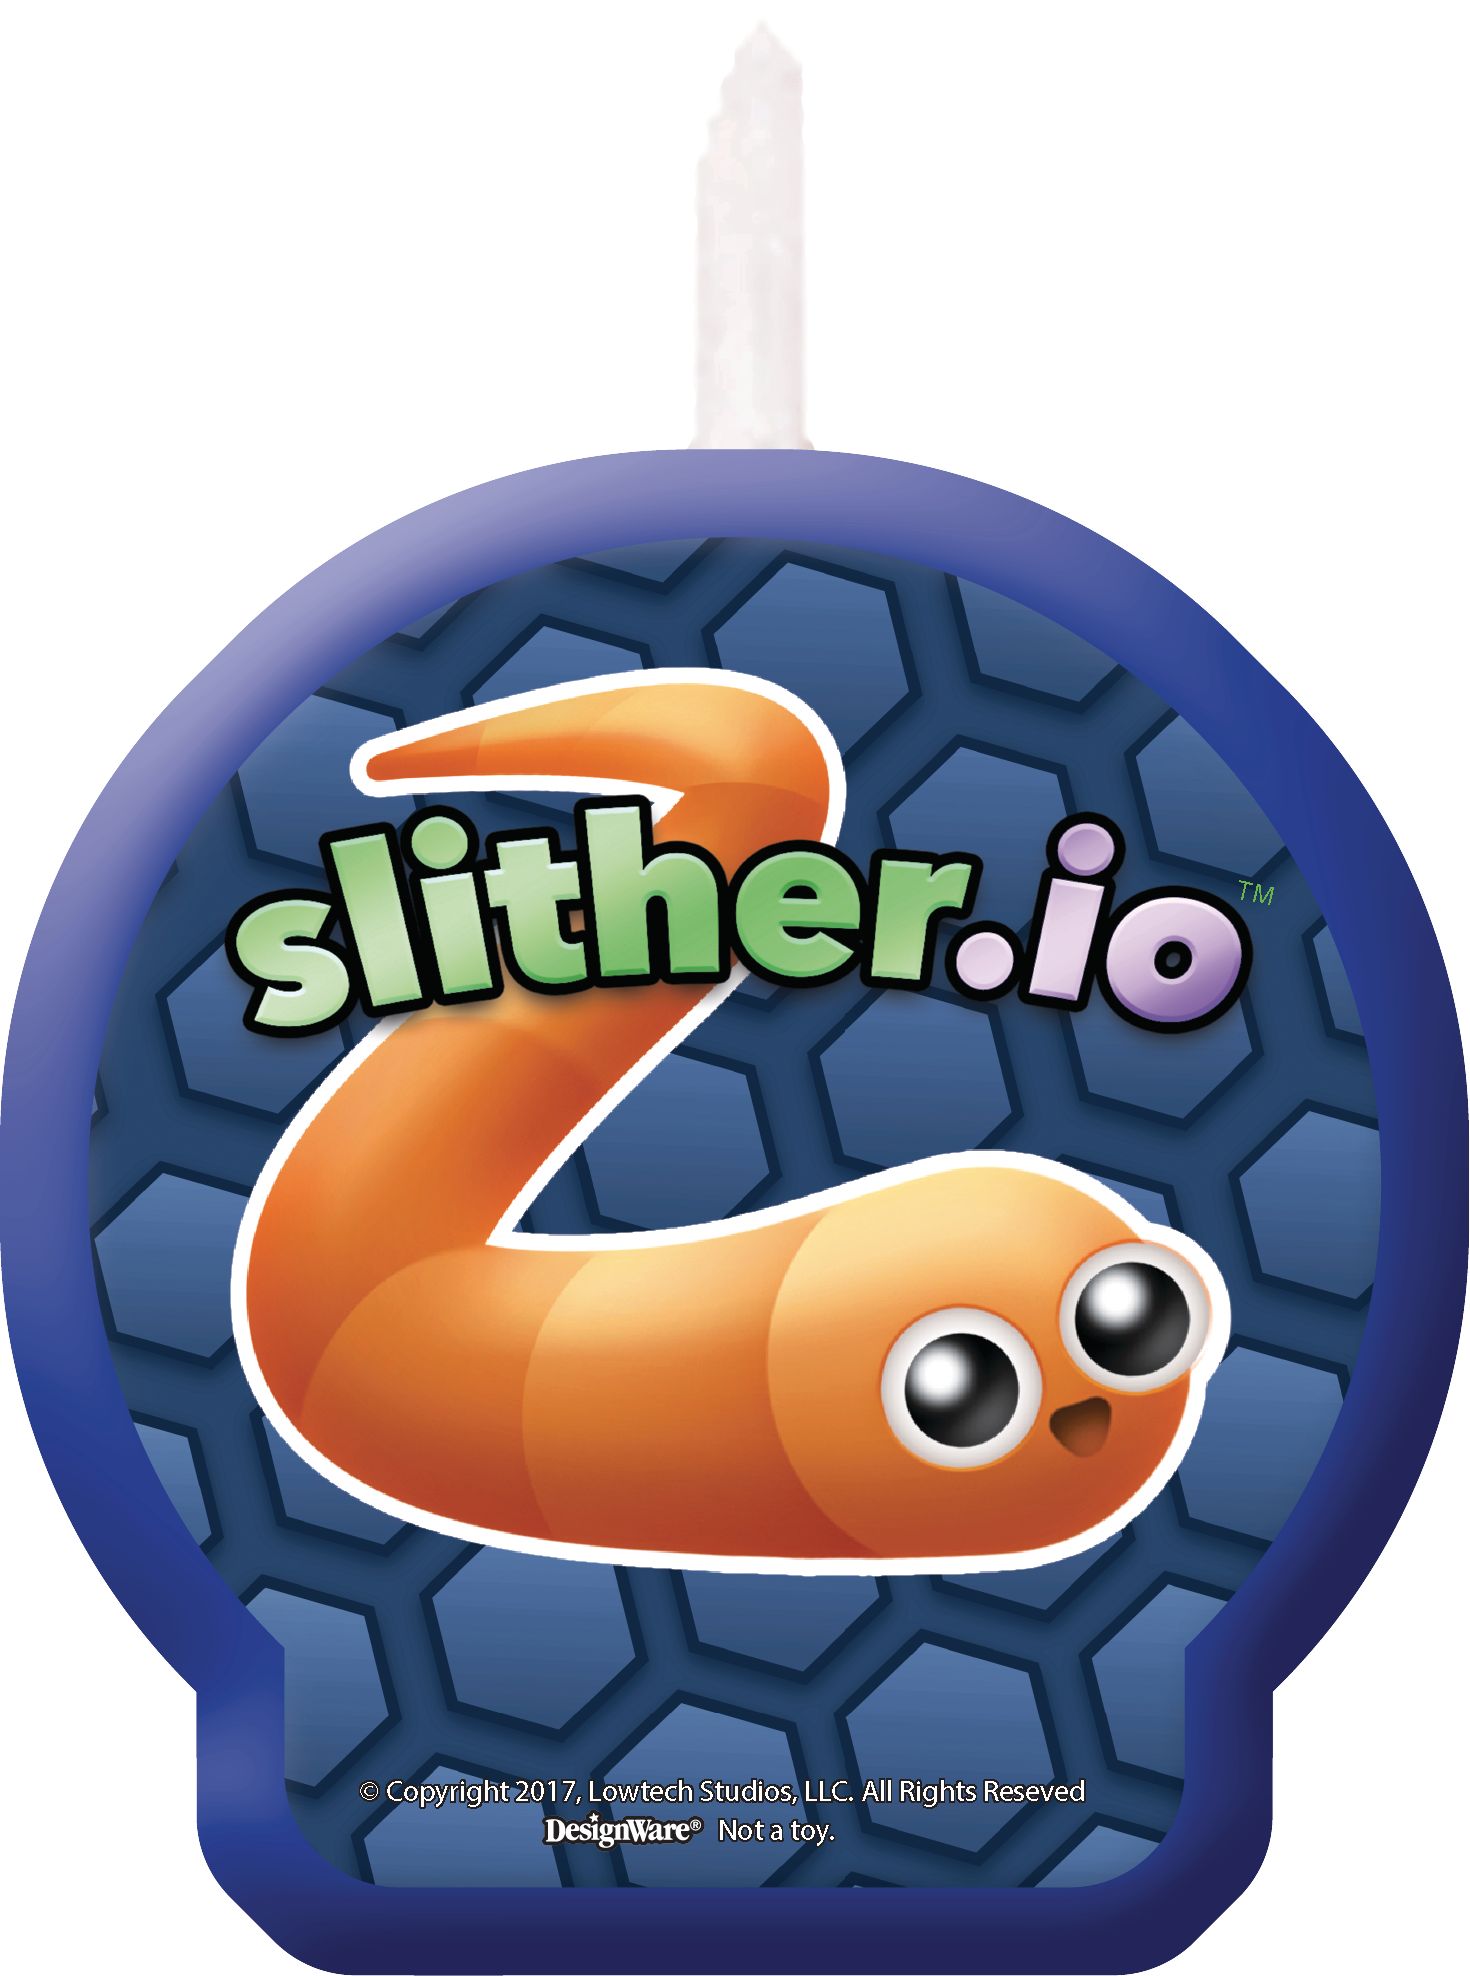 Slither.io' Toys Head to Retail